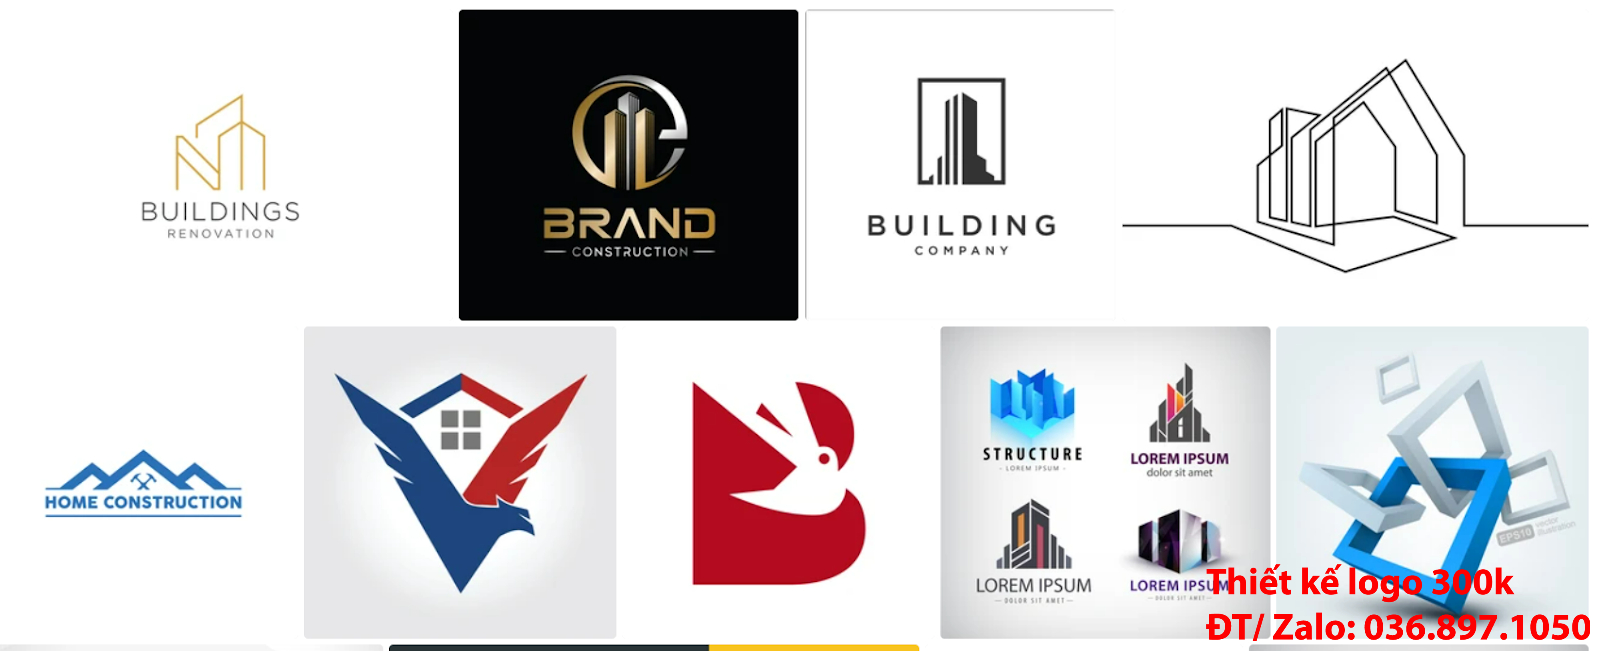 Đơn vị làm mẫu hình ảnh logo công ty kiến trúc PNG và Vector giá rẻ 300k, 500k